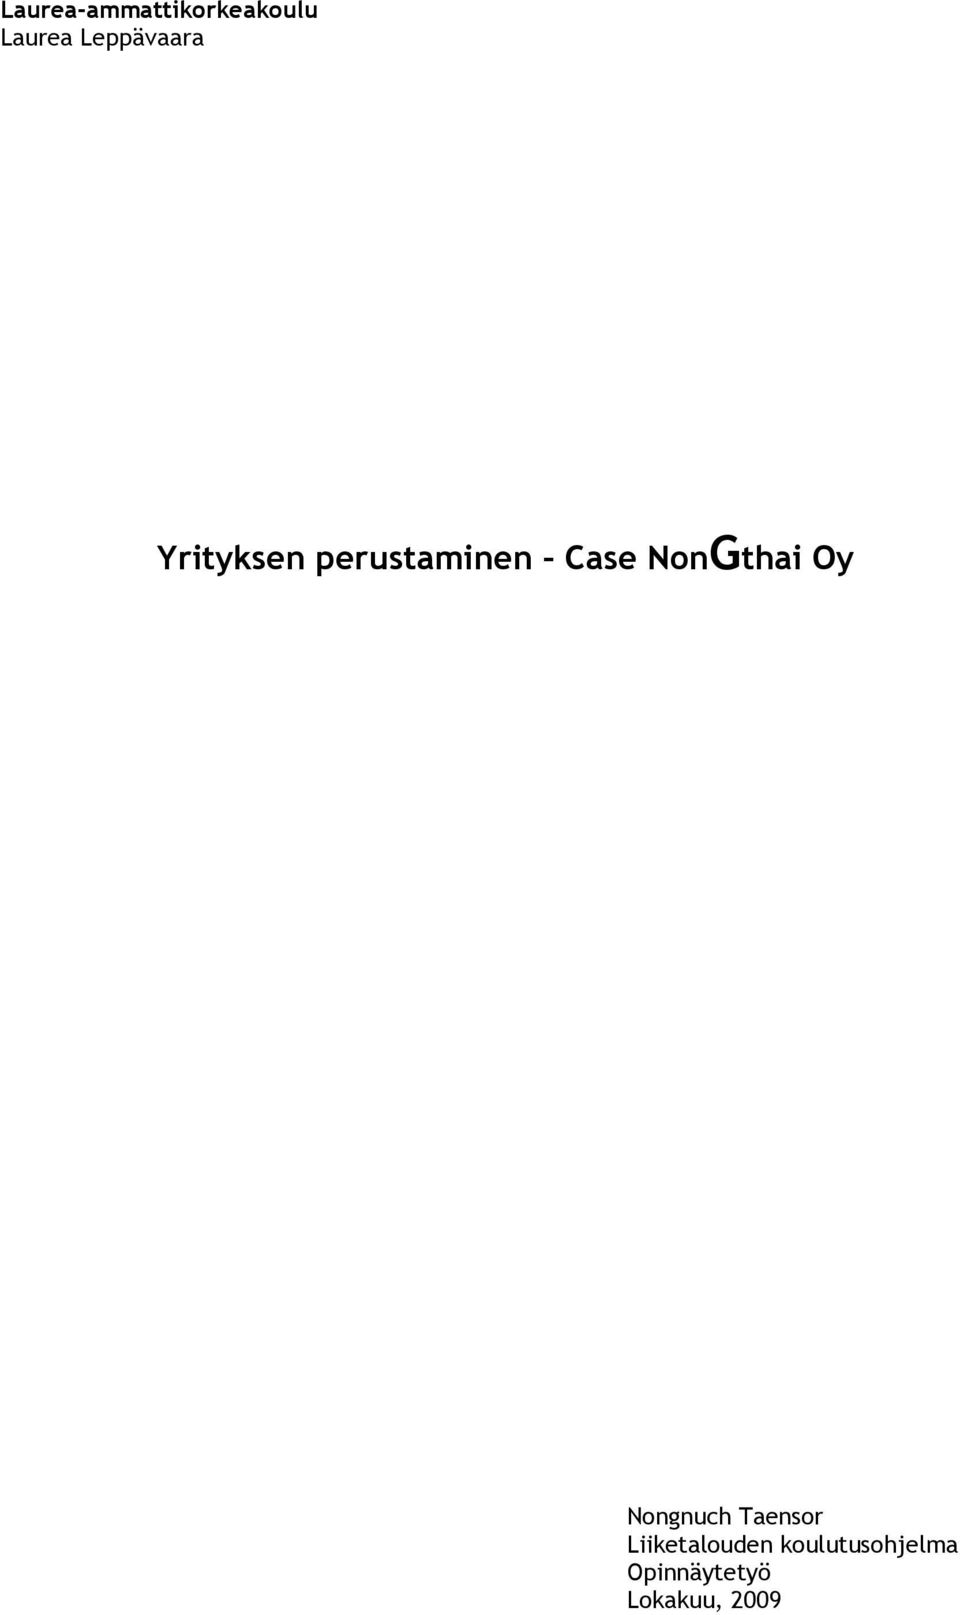 Case NnGthai Oy Nngnuch Taensr